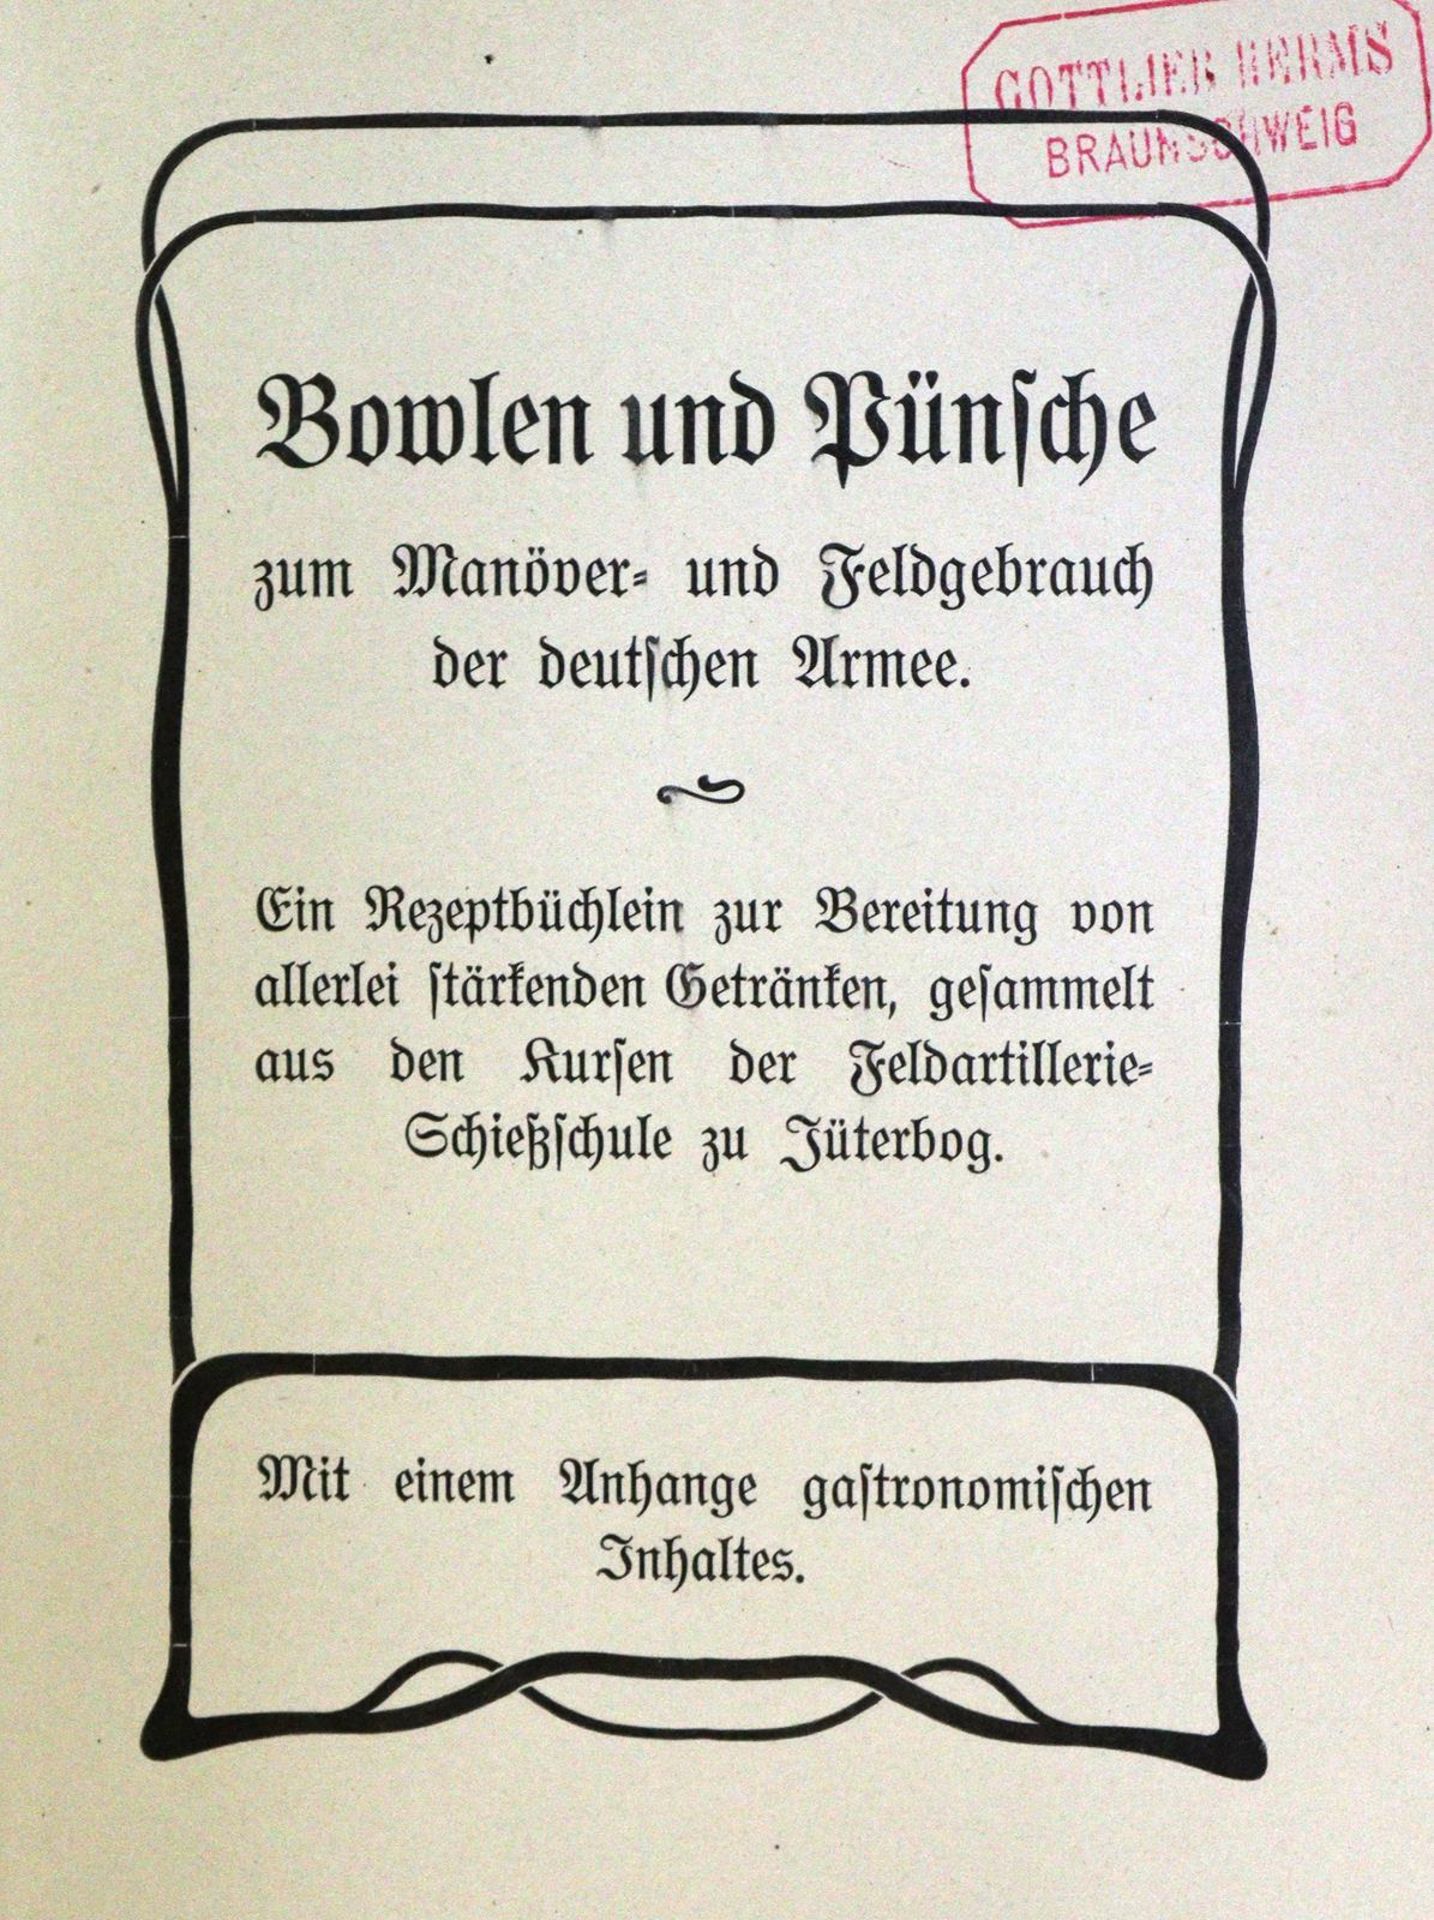 Bowlen und Pünsche - Image 2 of 3